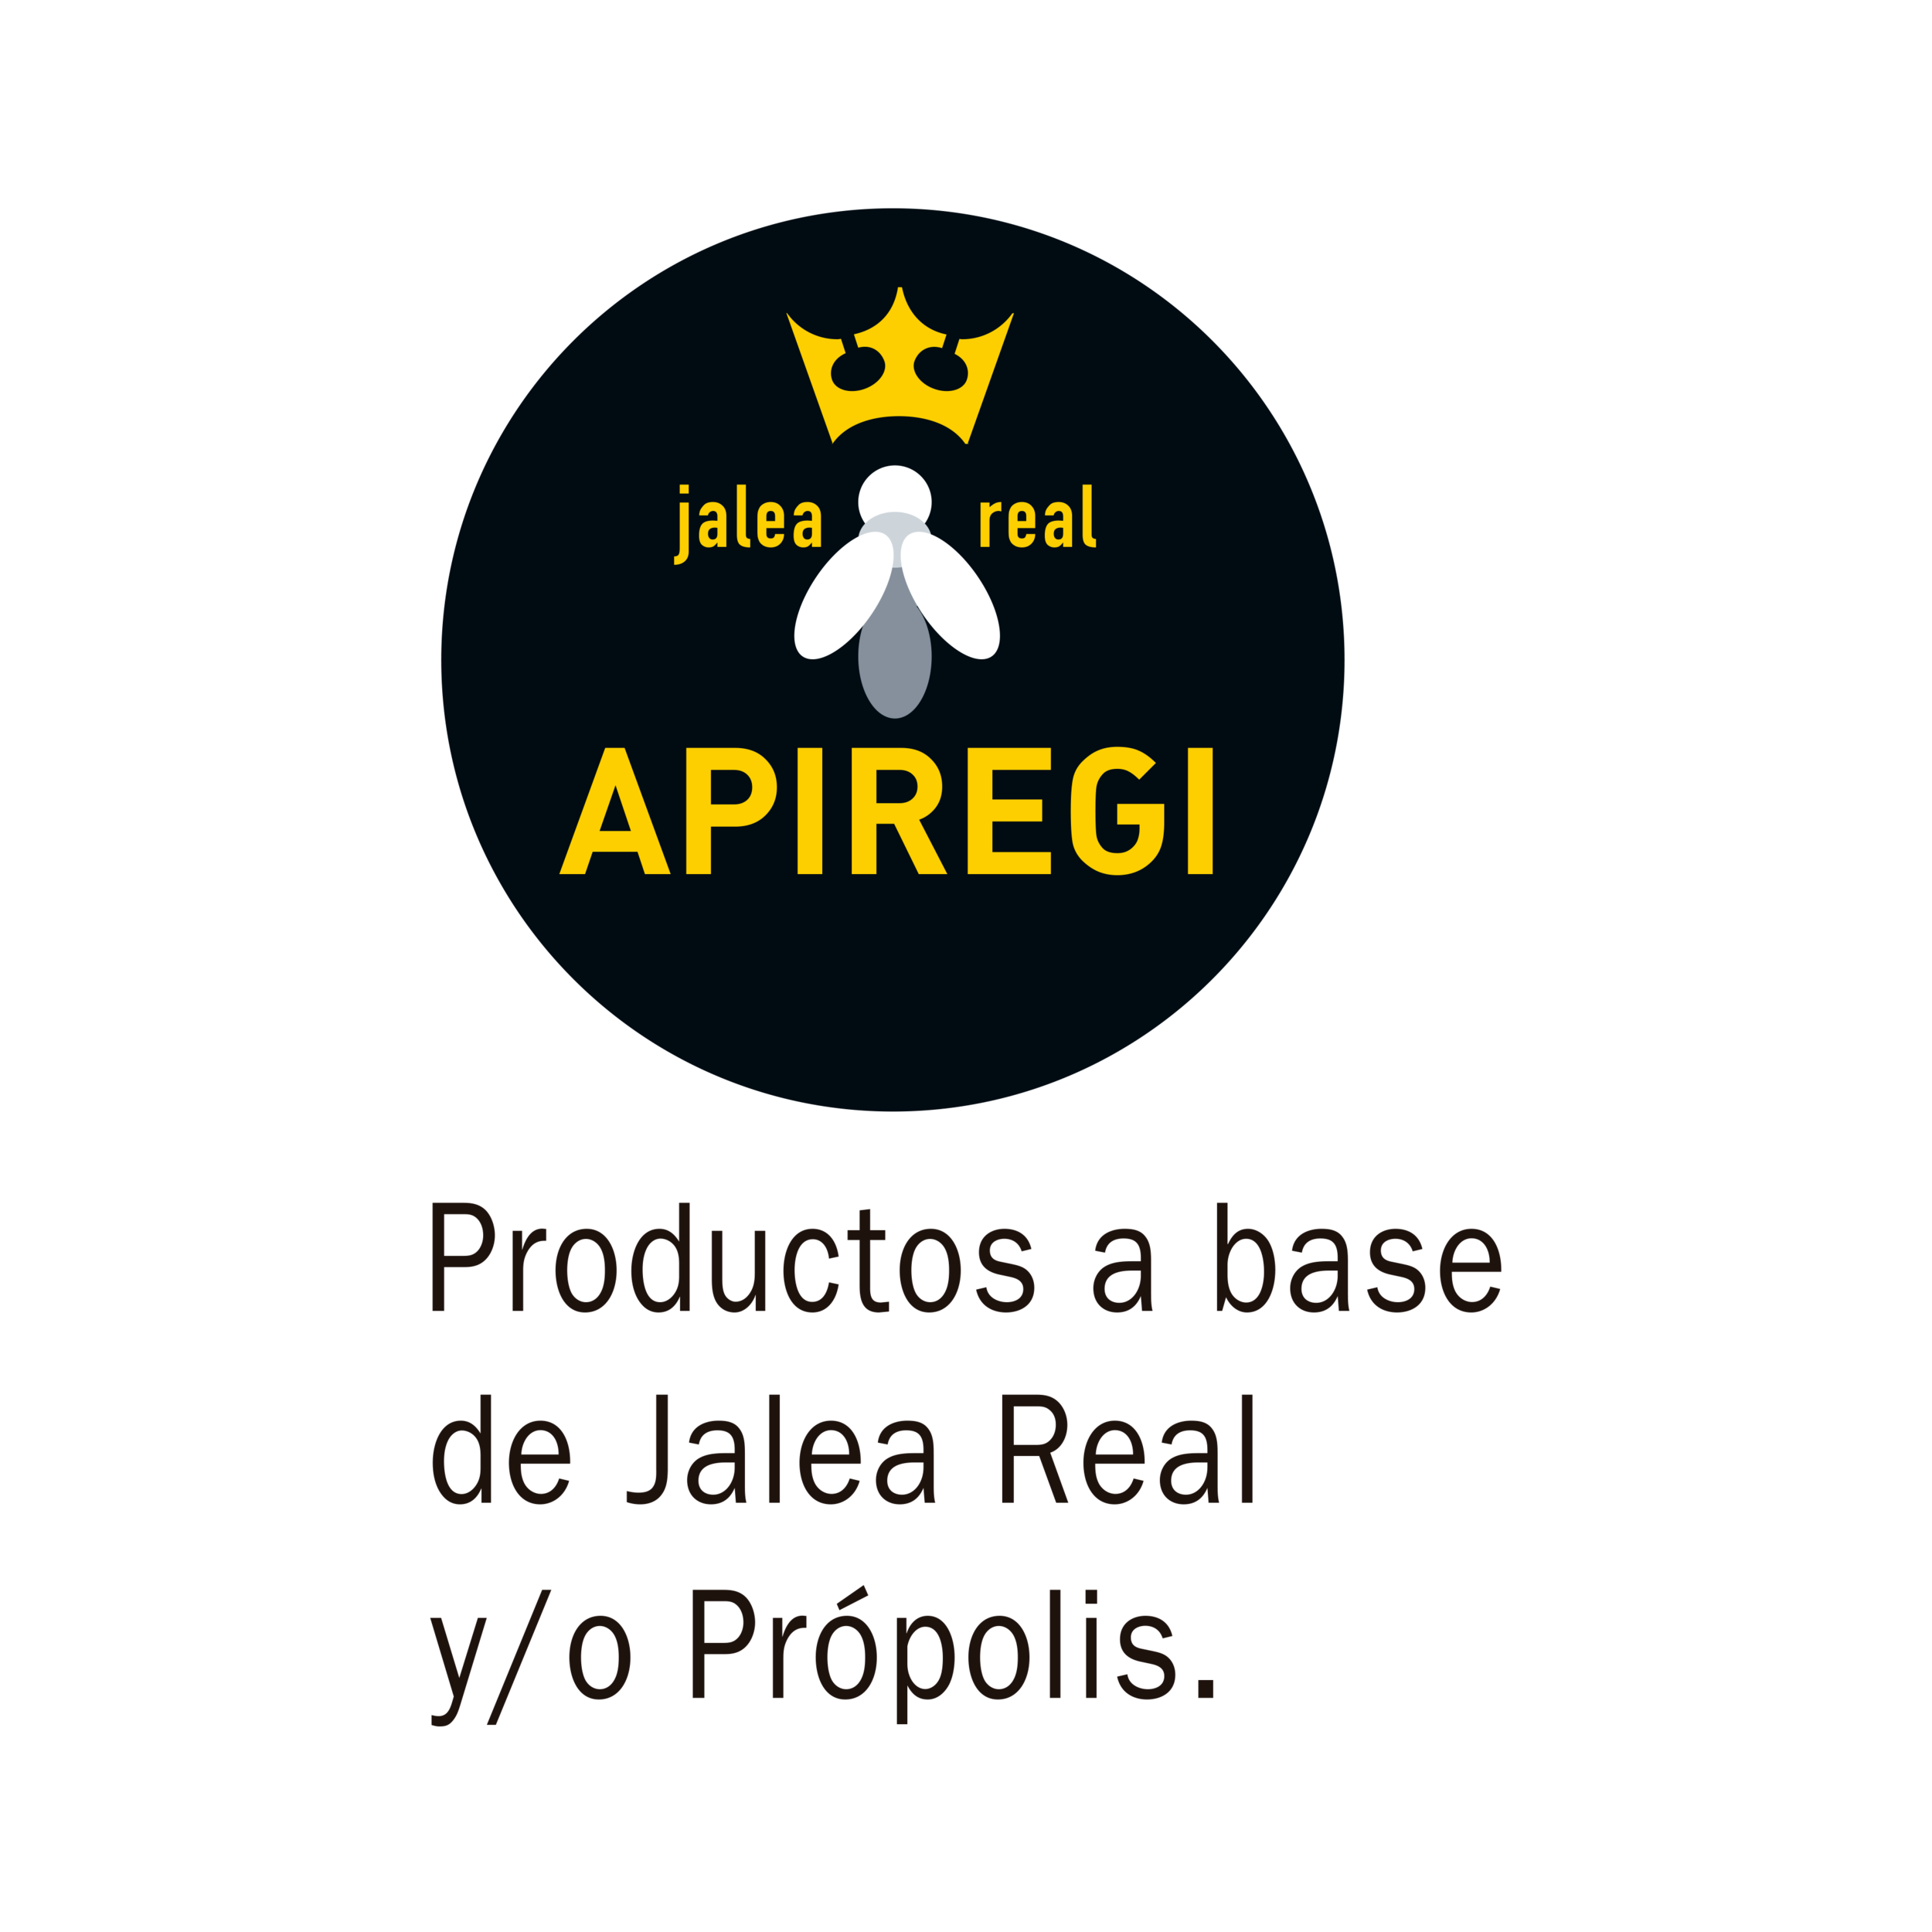 Apiregi - Jalea Real